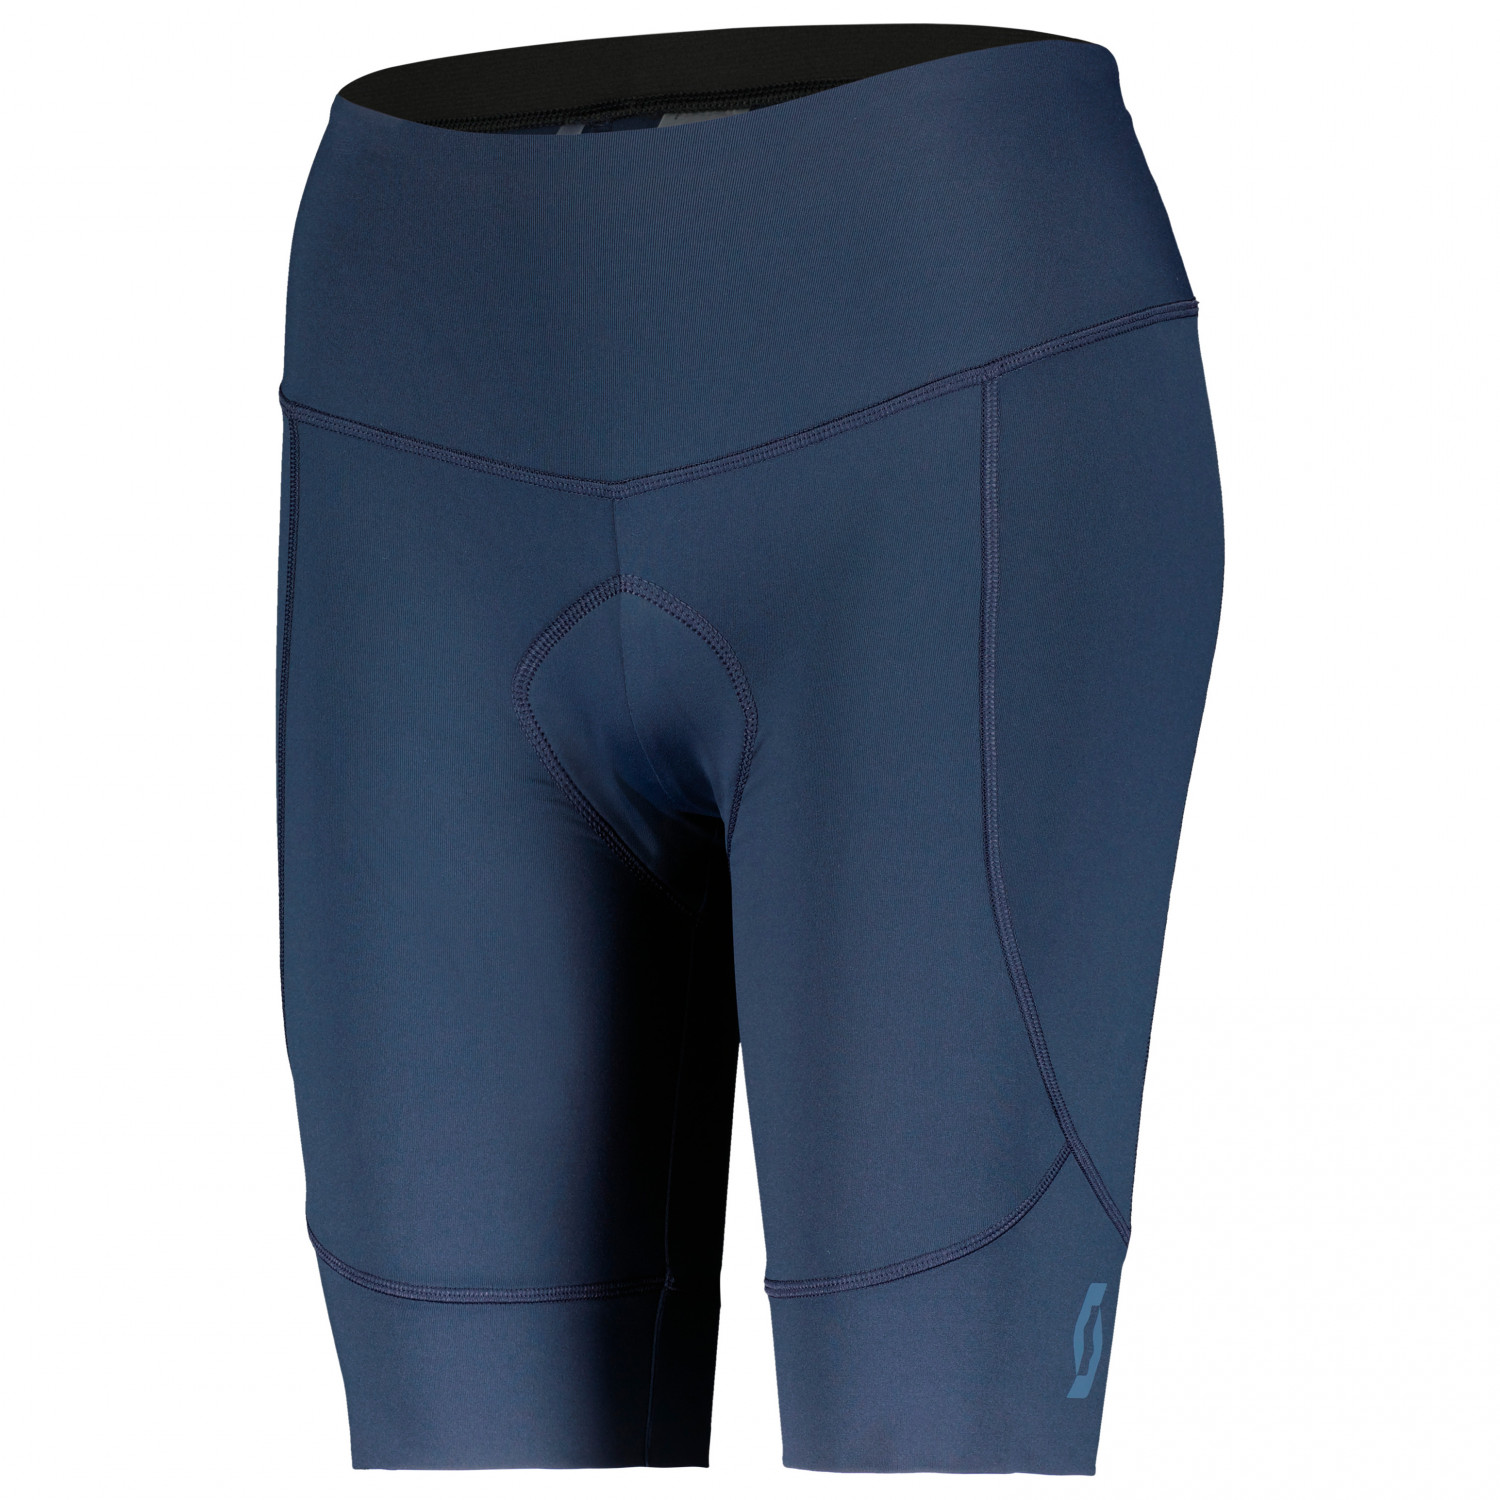 Велосипедные шорты Scott Women's Shorts Endurance 10 +++, цвет Dark Blue/Metal Blue